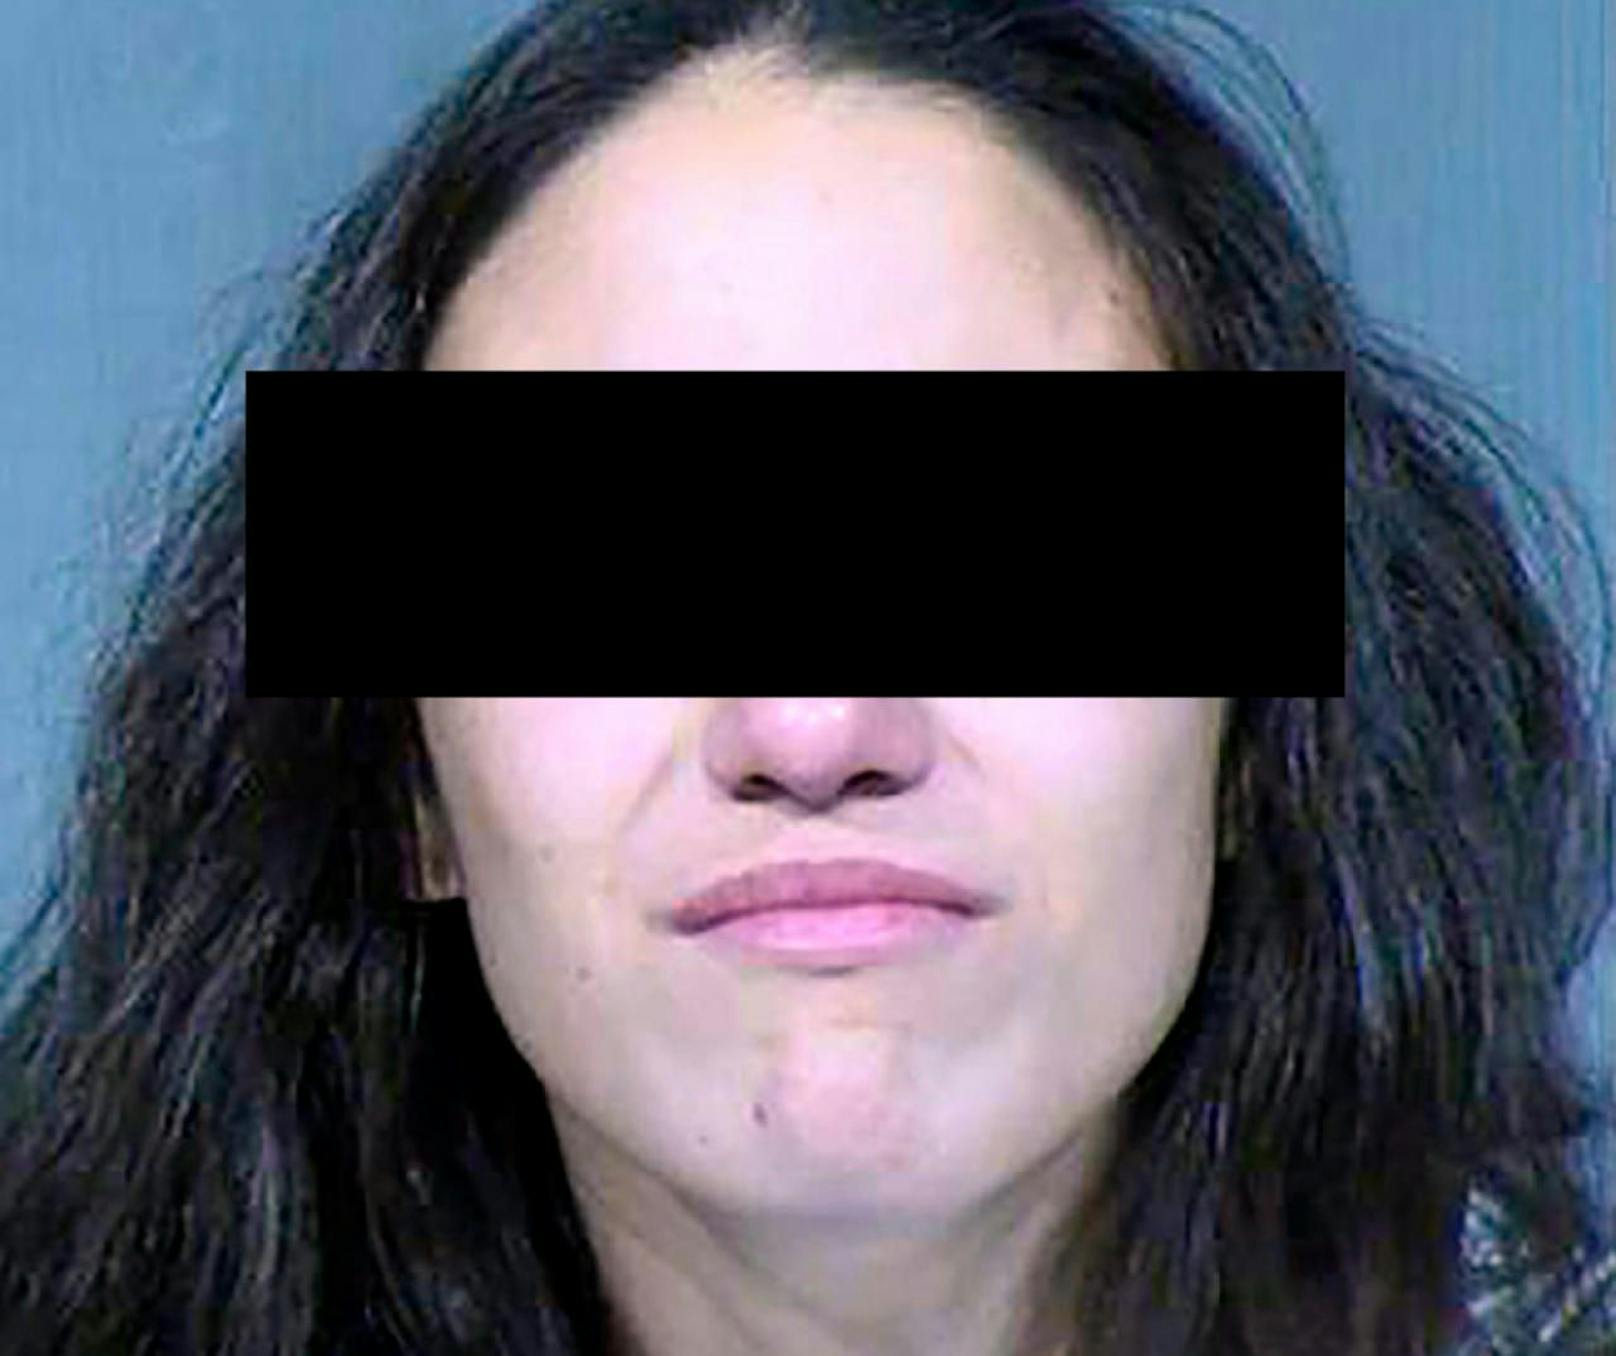 Rachel H. (22) wurde am 21. Januar 2020 in Phoenix, Arizona, verhaftet. Sie wird beschuldigt, ihre drei kleinen Kinder erstickt zu haben.